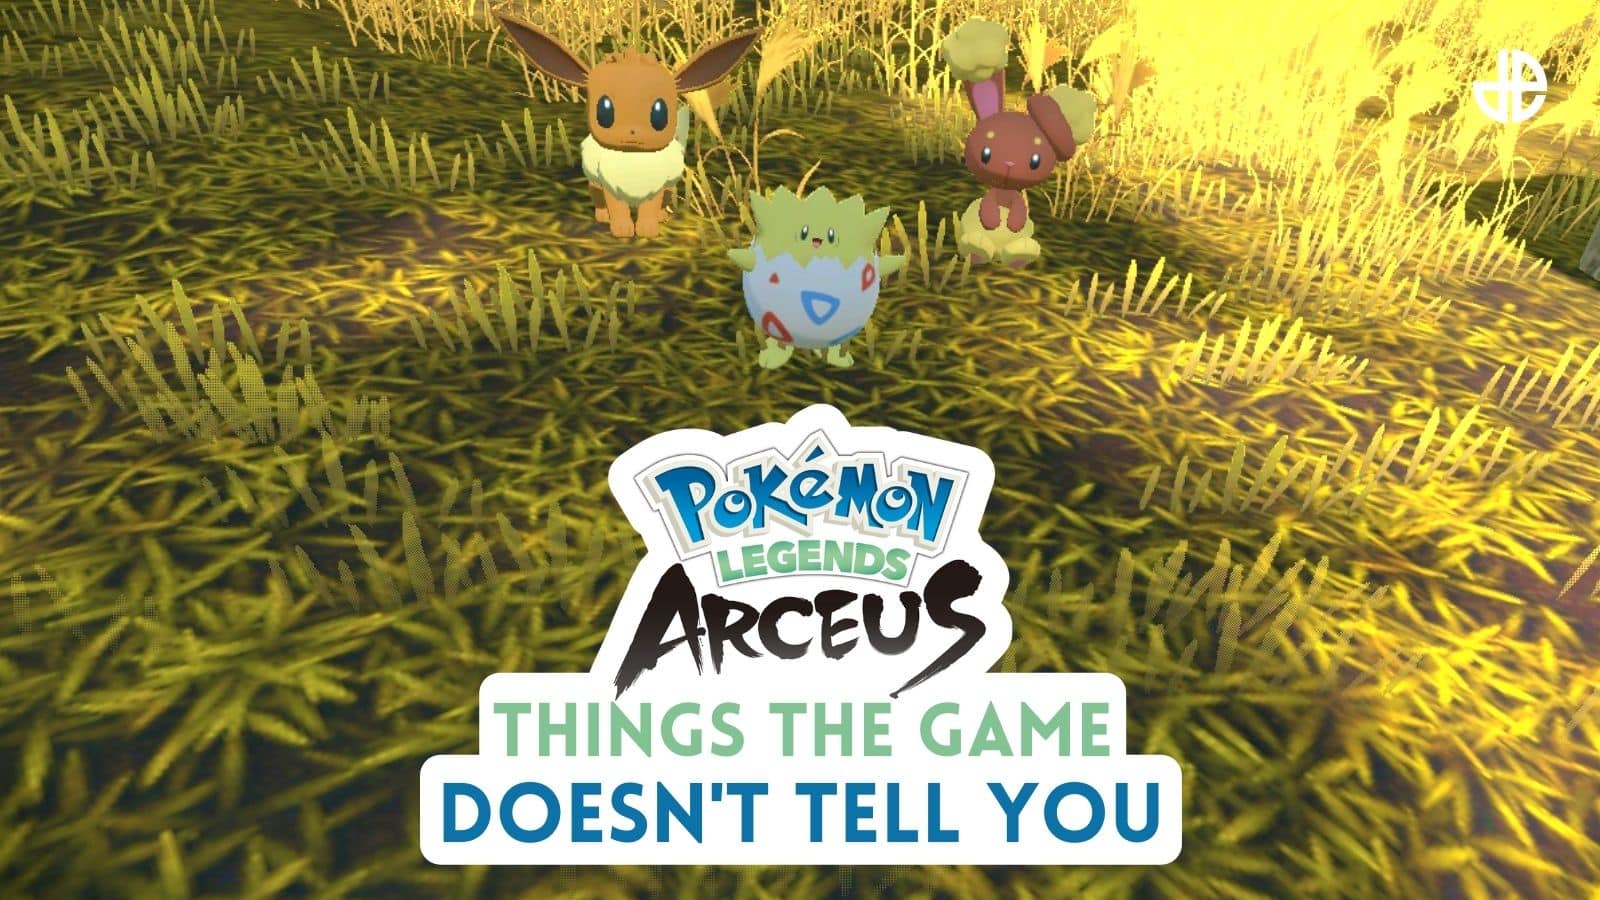 Pokemon Legends Arceus: How to catch Spiritomb